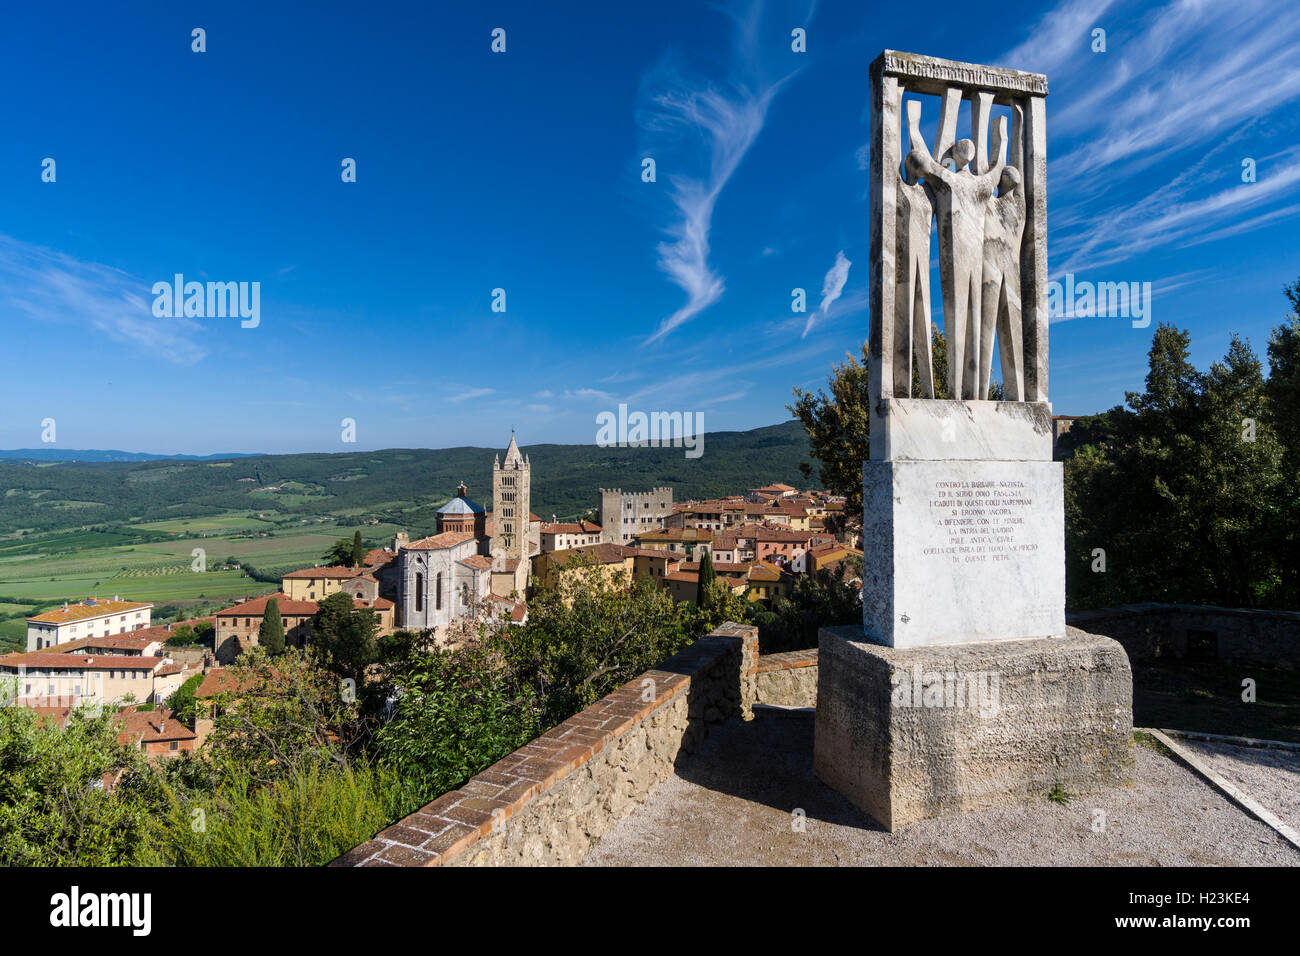 Monument contre le fascisme et le nazisme sur colline au-dessus de la ville, Massa Marittima, Toscane, Italie Banque D'Images